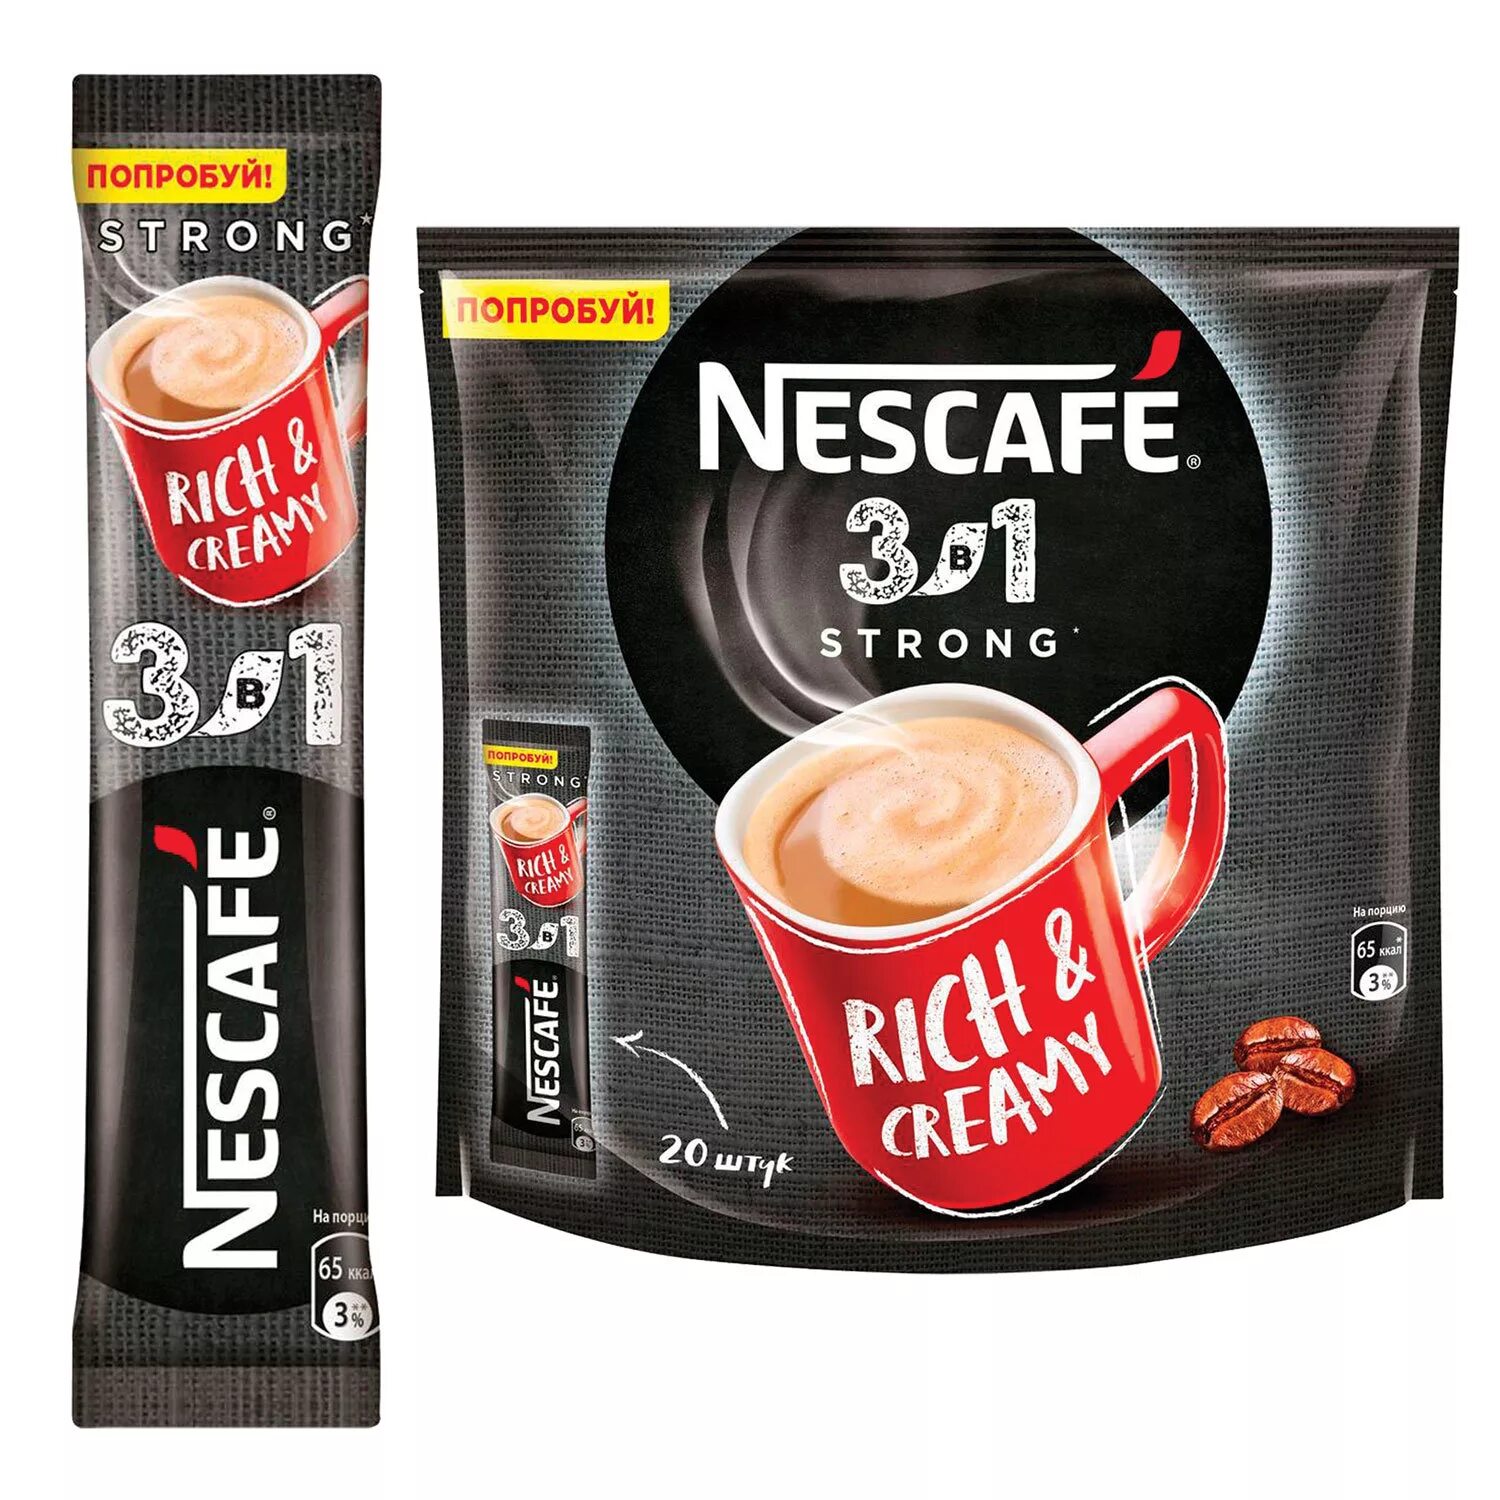 Nescafe 3в1 Rich & creamy. Кофе Нескафе 3 в 1 14,5г крепкий 20*20. Нескафе 3в1 кофе Классик 14,5гр упаковка стики. Кофе в пакетиках 3 в 1 Nescafe. Лучший кофе 3 в 1